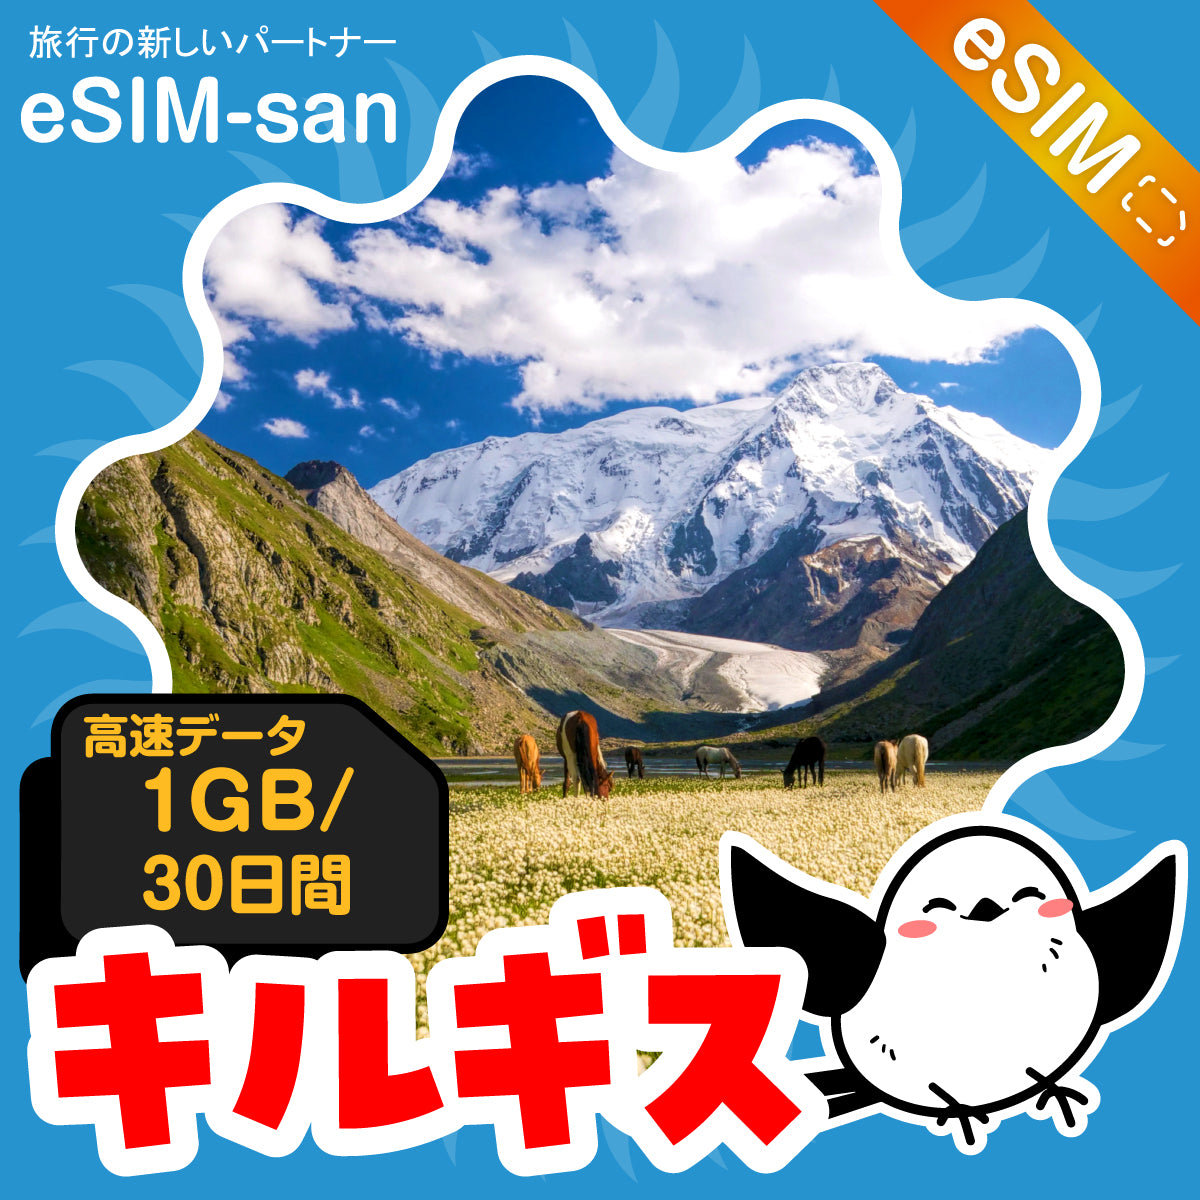 キルギスeSIMの1GBプラン画像_eSIM-san